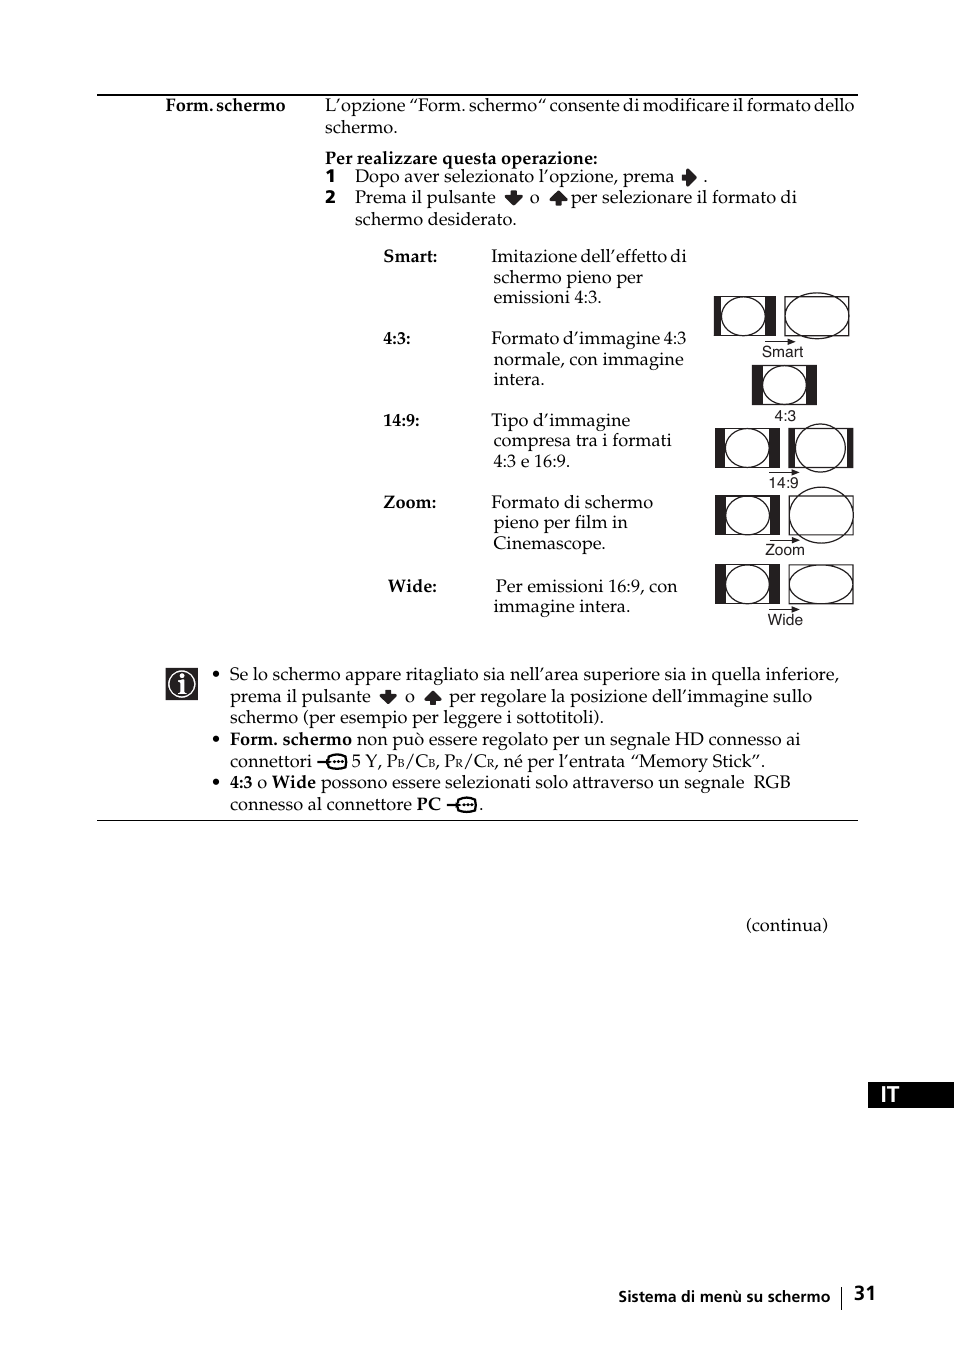 Sony KE-42MR1 Manuale d'uso | Pagina 32 / 302